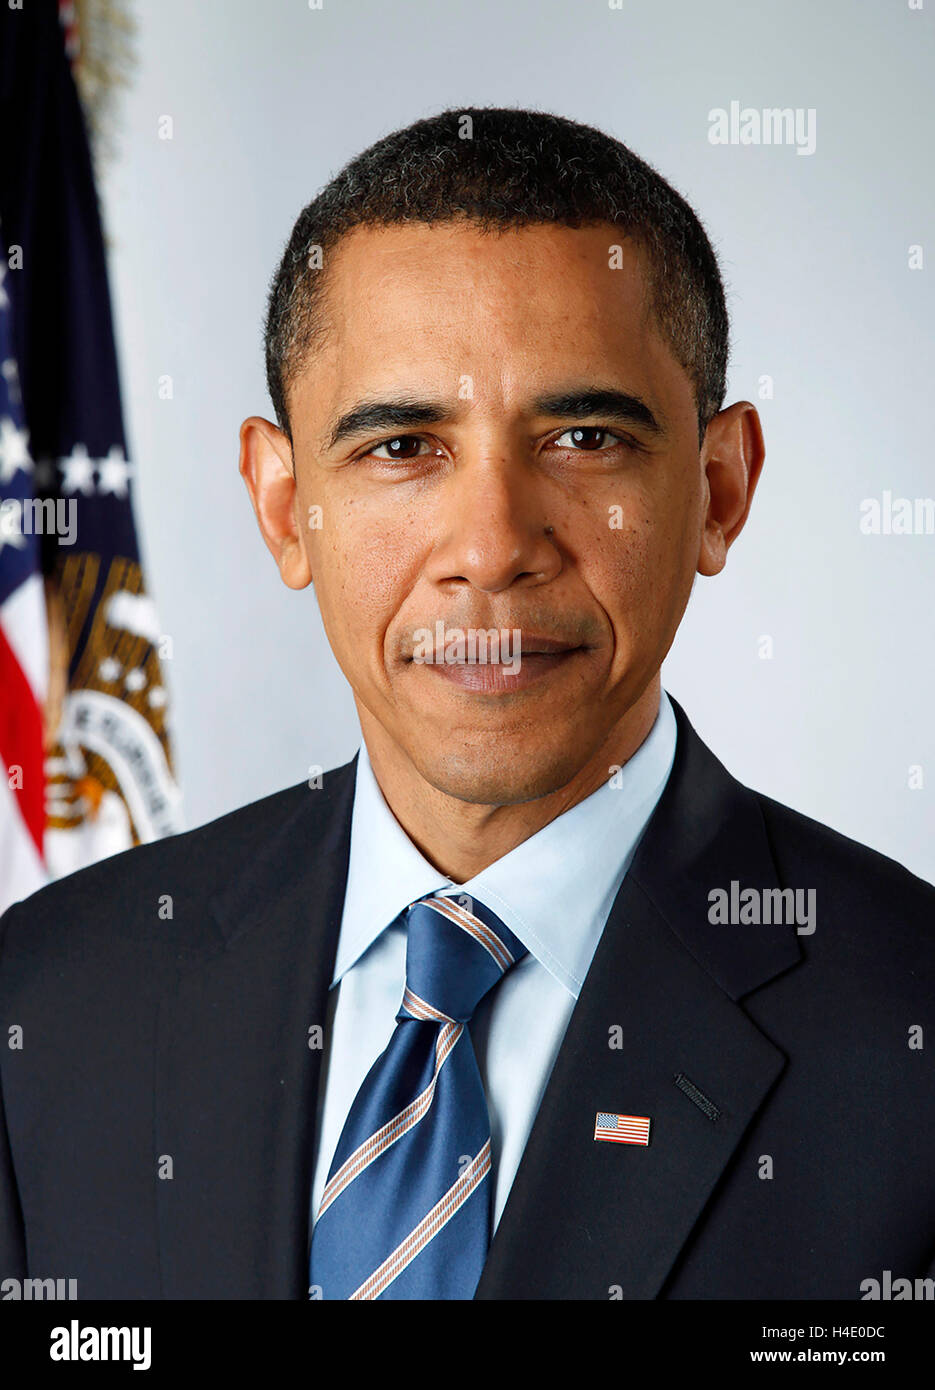 Barack Obama. Ritratto ufficiale di Barack Obama (n.1961), il 44° presidente degli Stati Uniti, preso il 13 gennaio 2009, quando fu eletto presidente e una settimana prima di assumere il suo incarico. Foto Stock